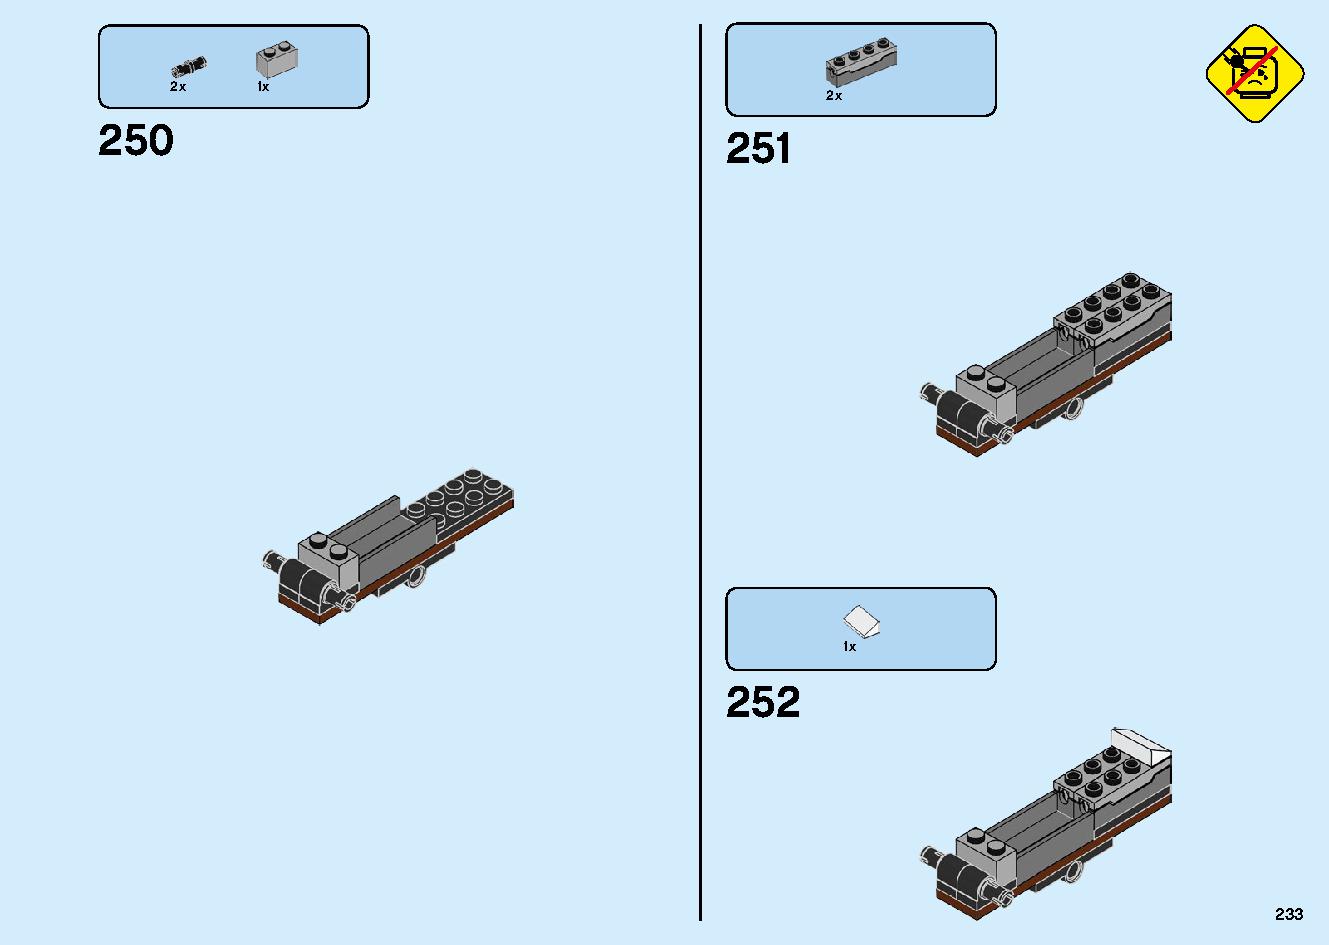 魔境のブリザード神殿 70678 レゴの商品情報 レゴの説明書・組立方法 233 page